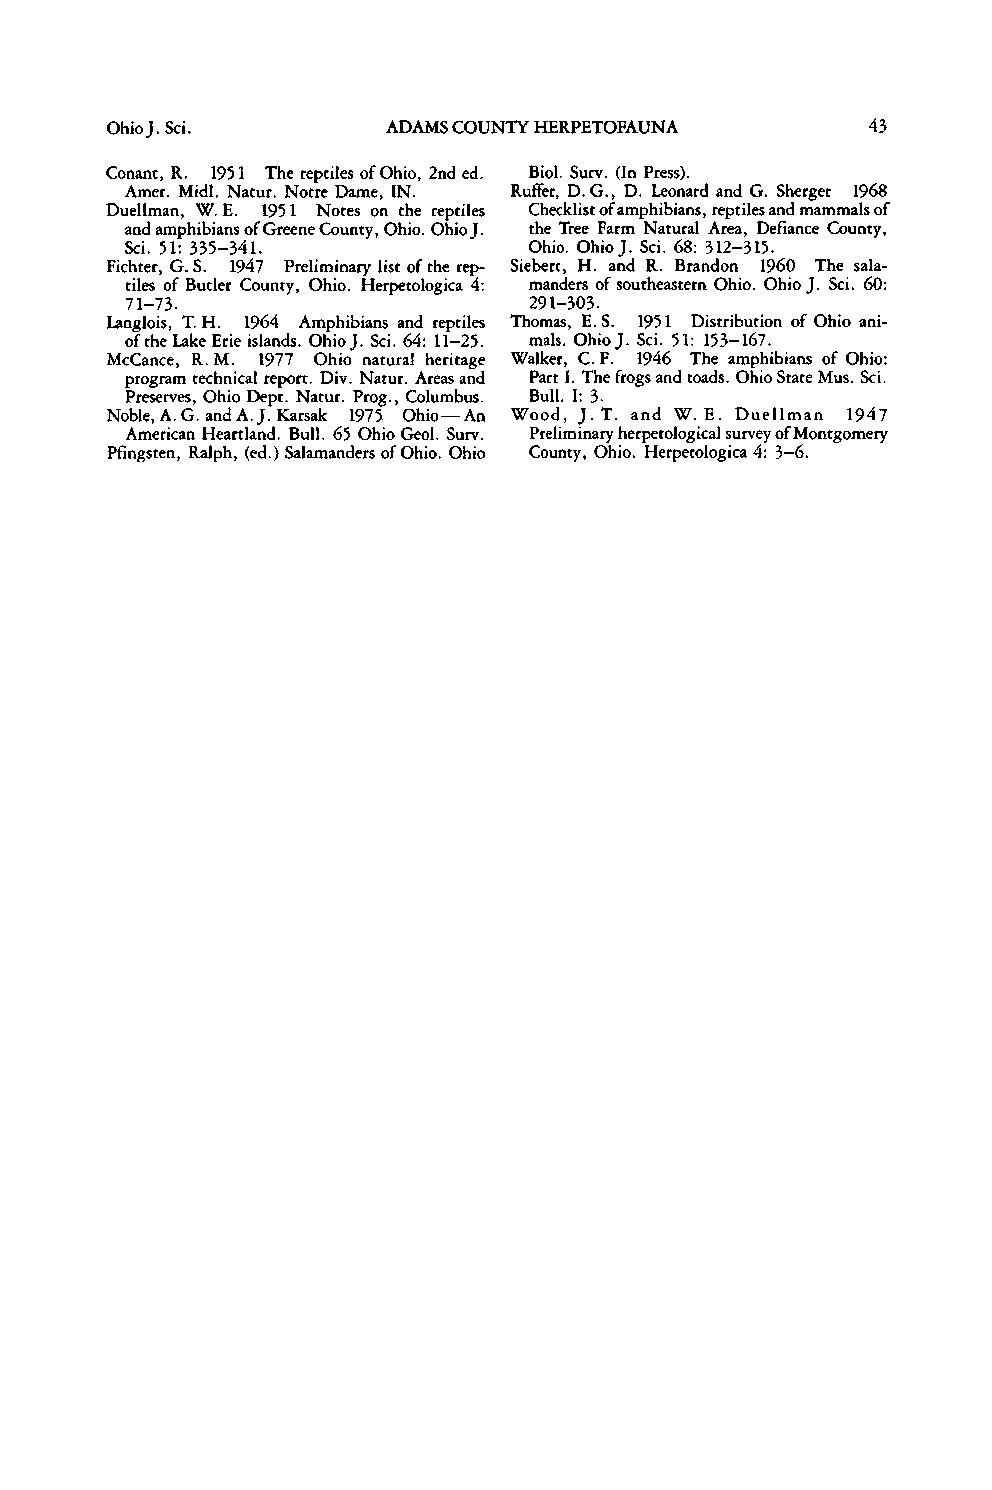 OhioJ. Sci. ADAMS OUNTY HERPETOFAUNA 3 onant, R. 1951 The reptiles of Ohio, 2nd ed. Amer. Midi. Natur. Notre Dame, IN. Duellman, W. E. 1951 Notes on the reptiles and amphibians of e ounty, Ohio.